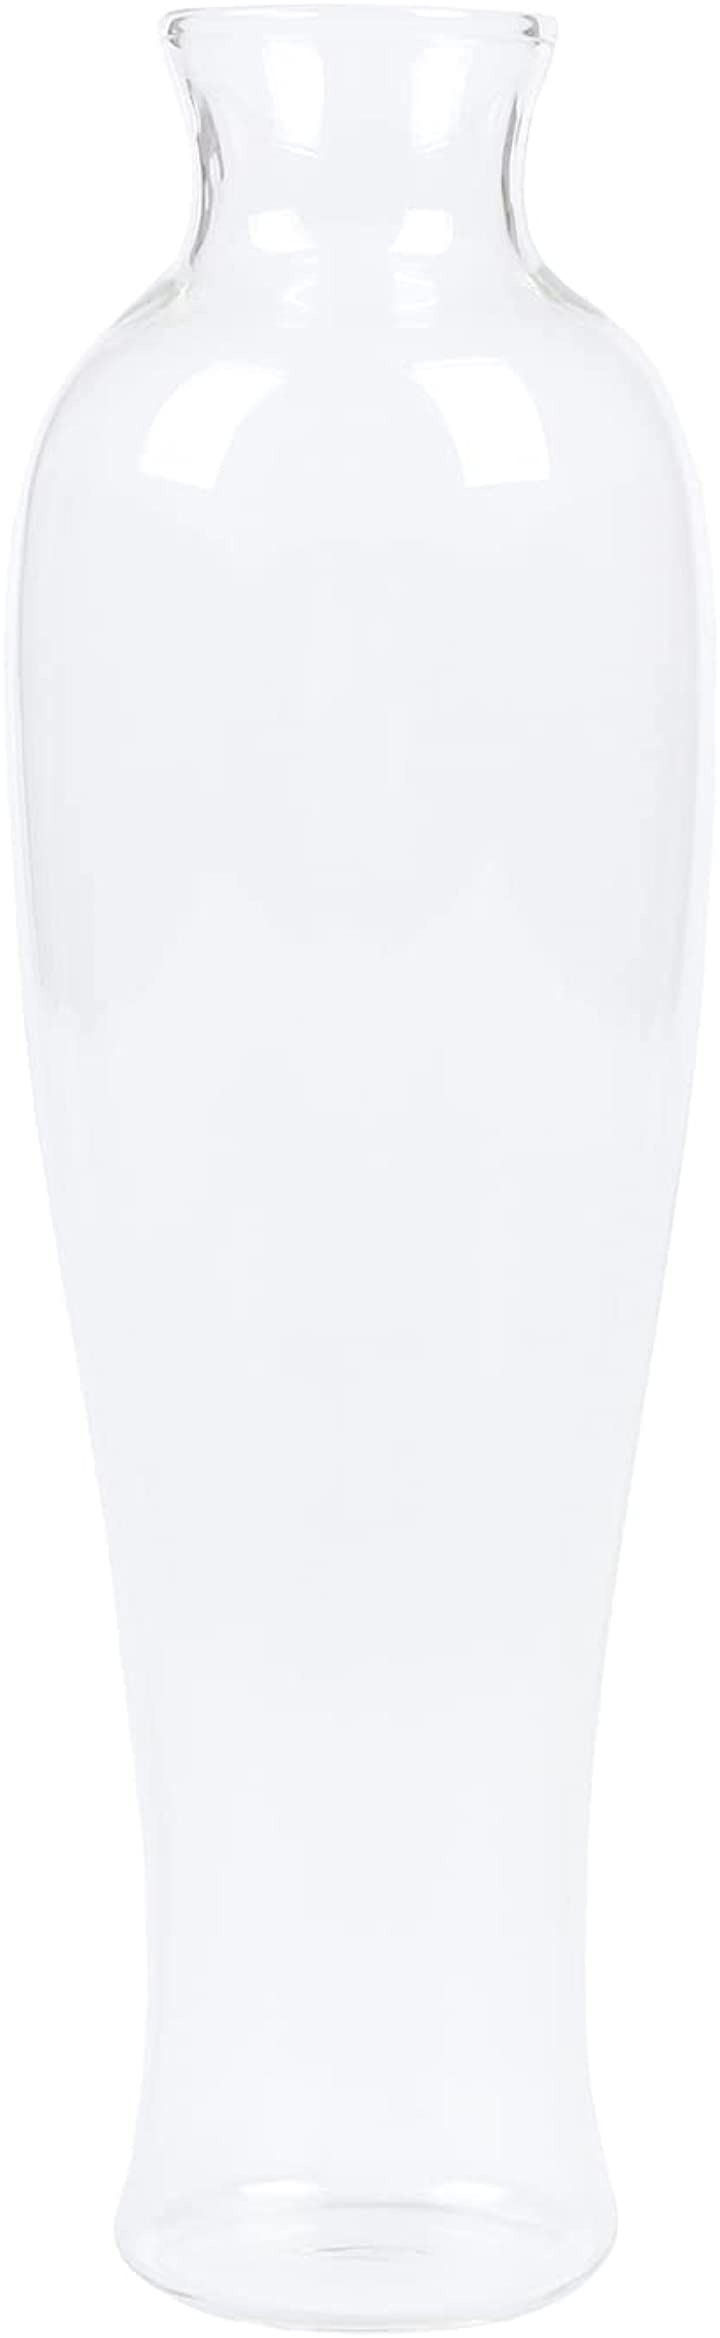 激安/新作 花瓶 フラワーベース(細瓶) アンティーク風 レトロ シノワズリスタイル 一輪挿し 壺 ガラス その他